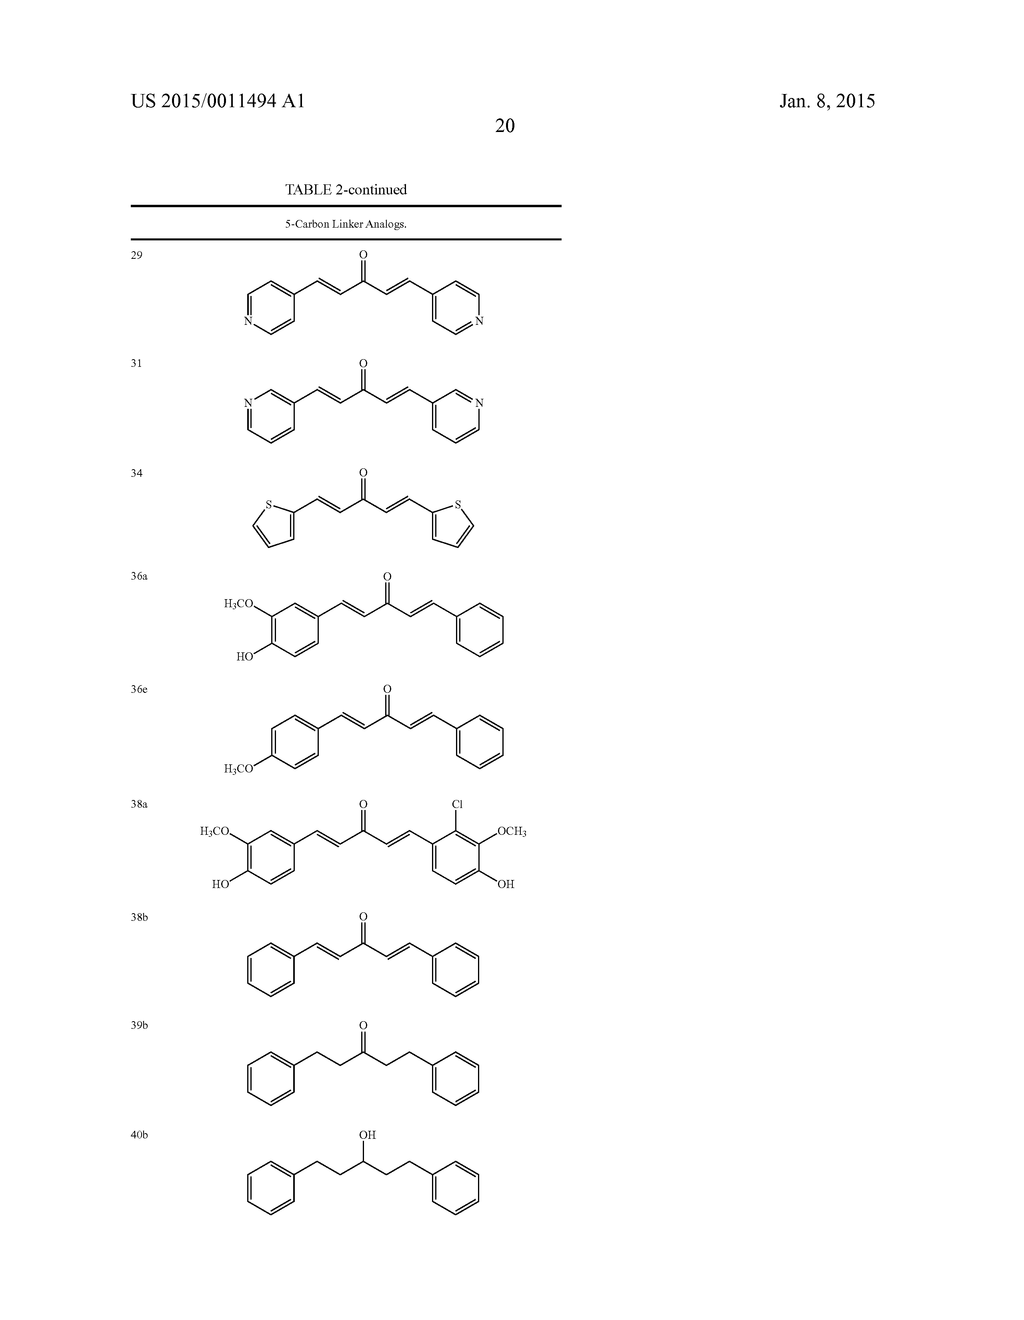 THERAPEUTIC CURCUMIN DERIVATIVES - diagram, schematic, and image 60